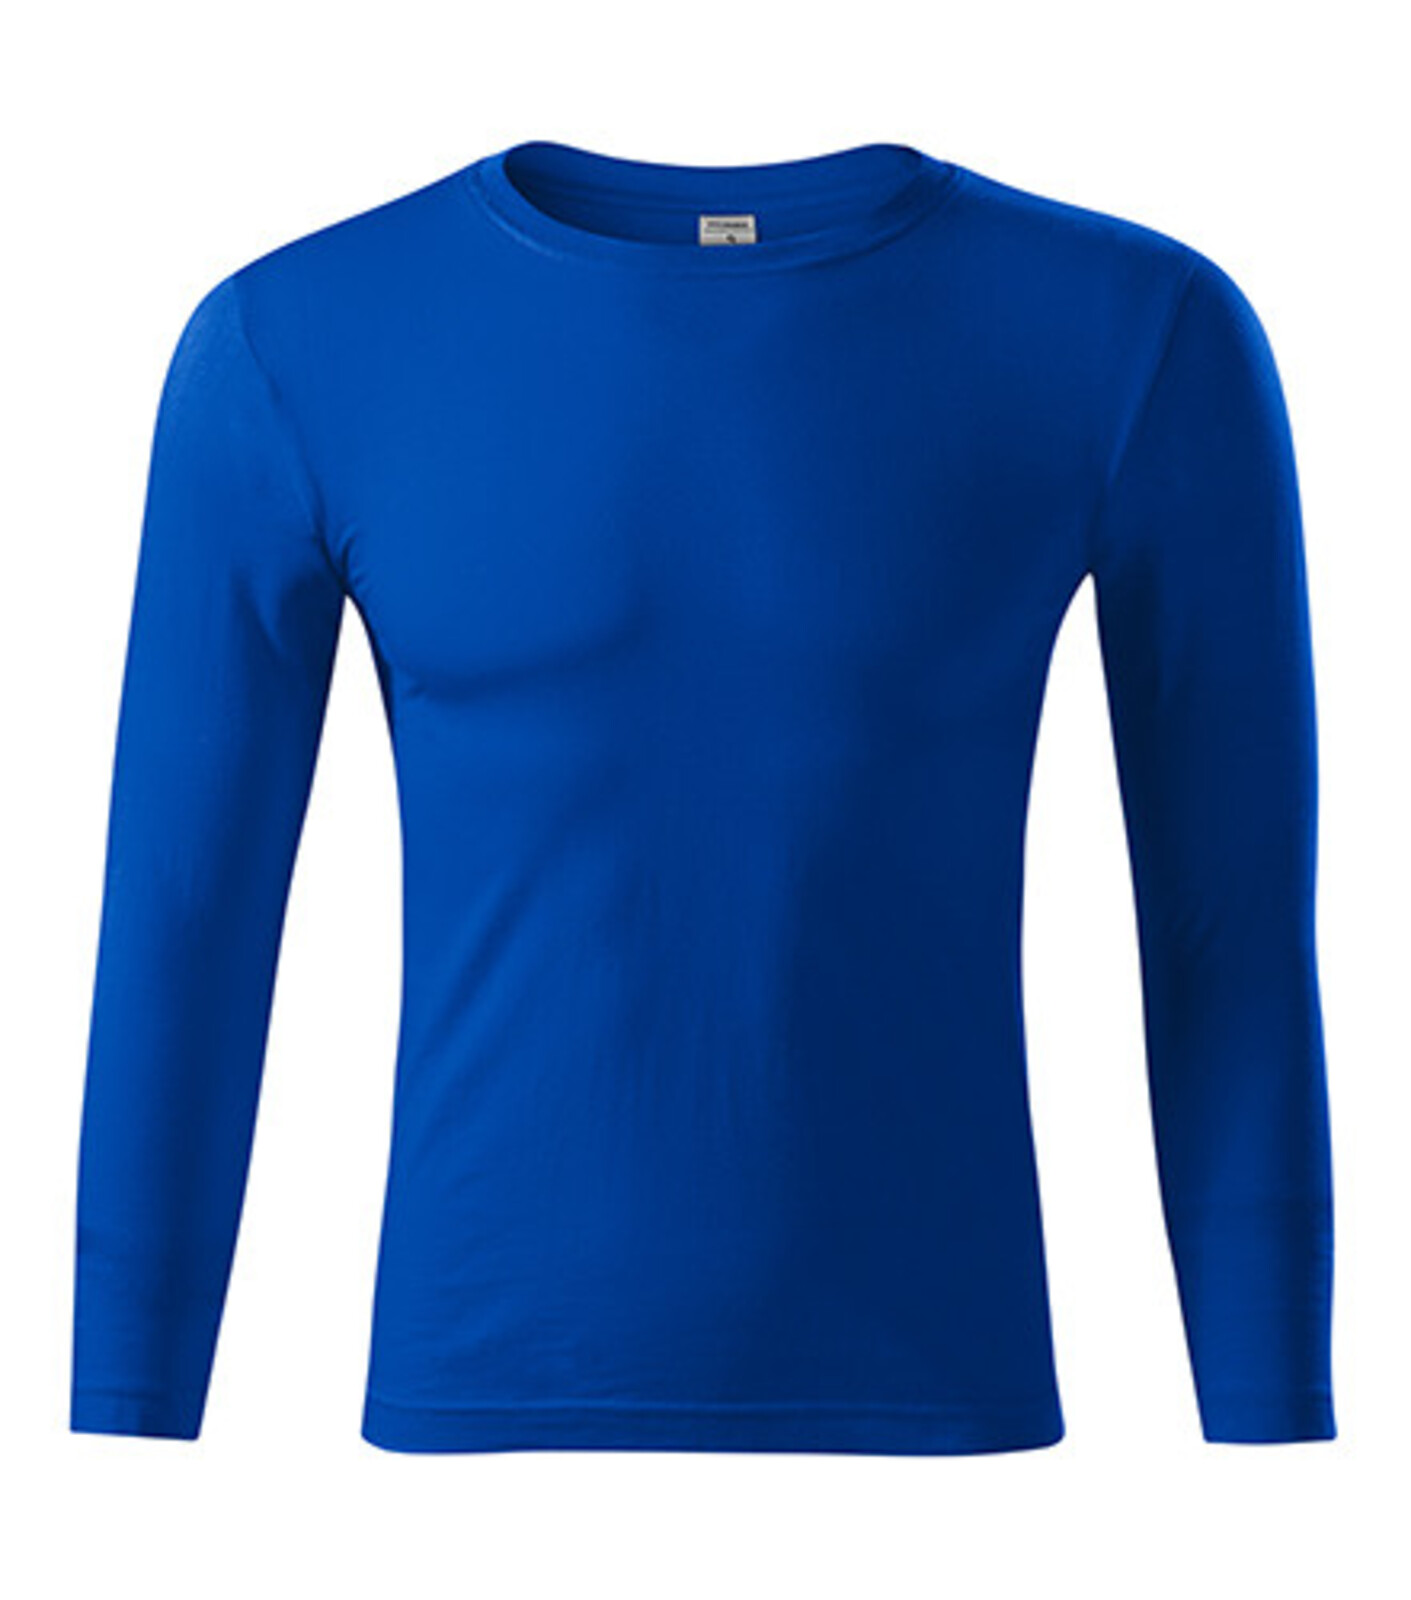 Unisex tričko s dlhým rukávom Progress LS P75 - veľkosť: S, farba: kráľovská modrá